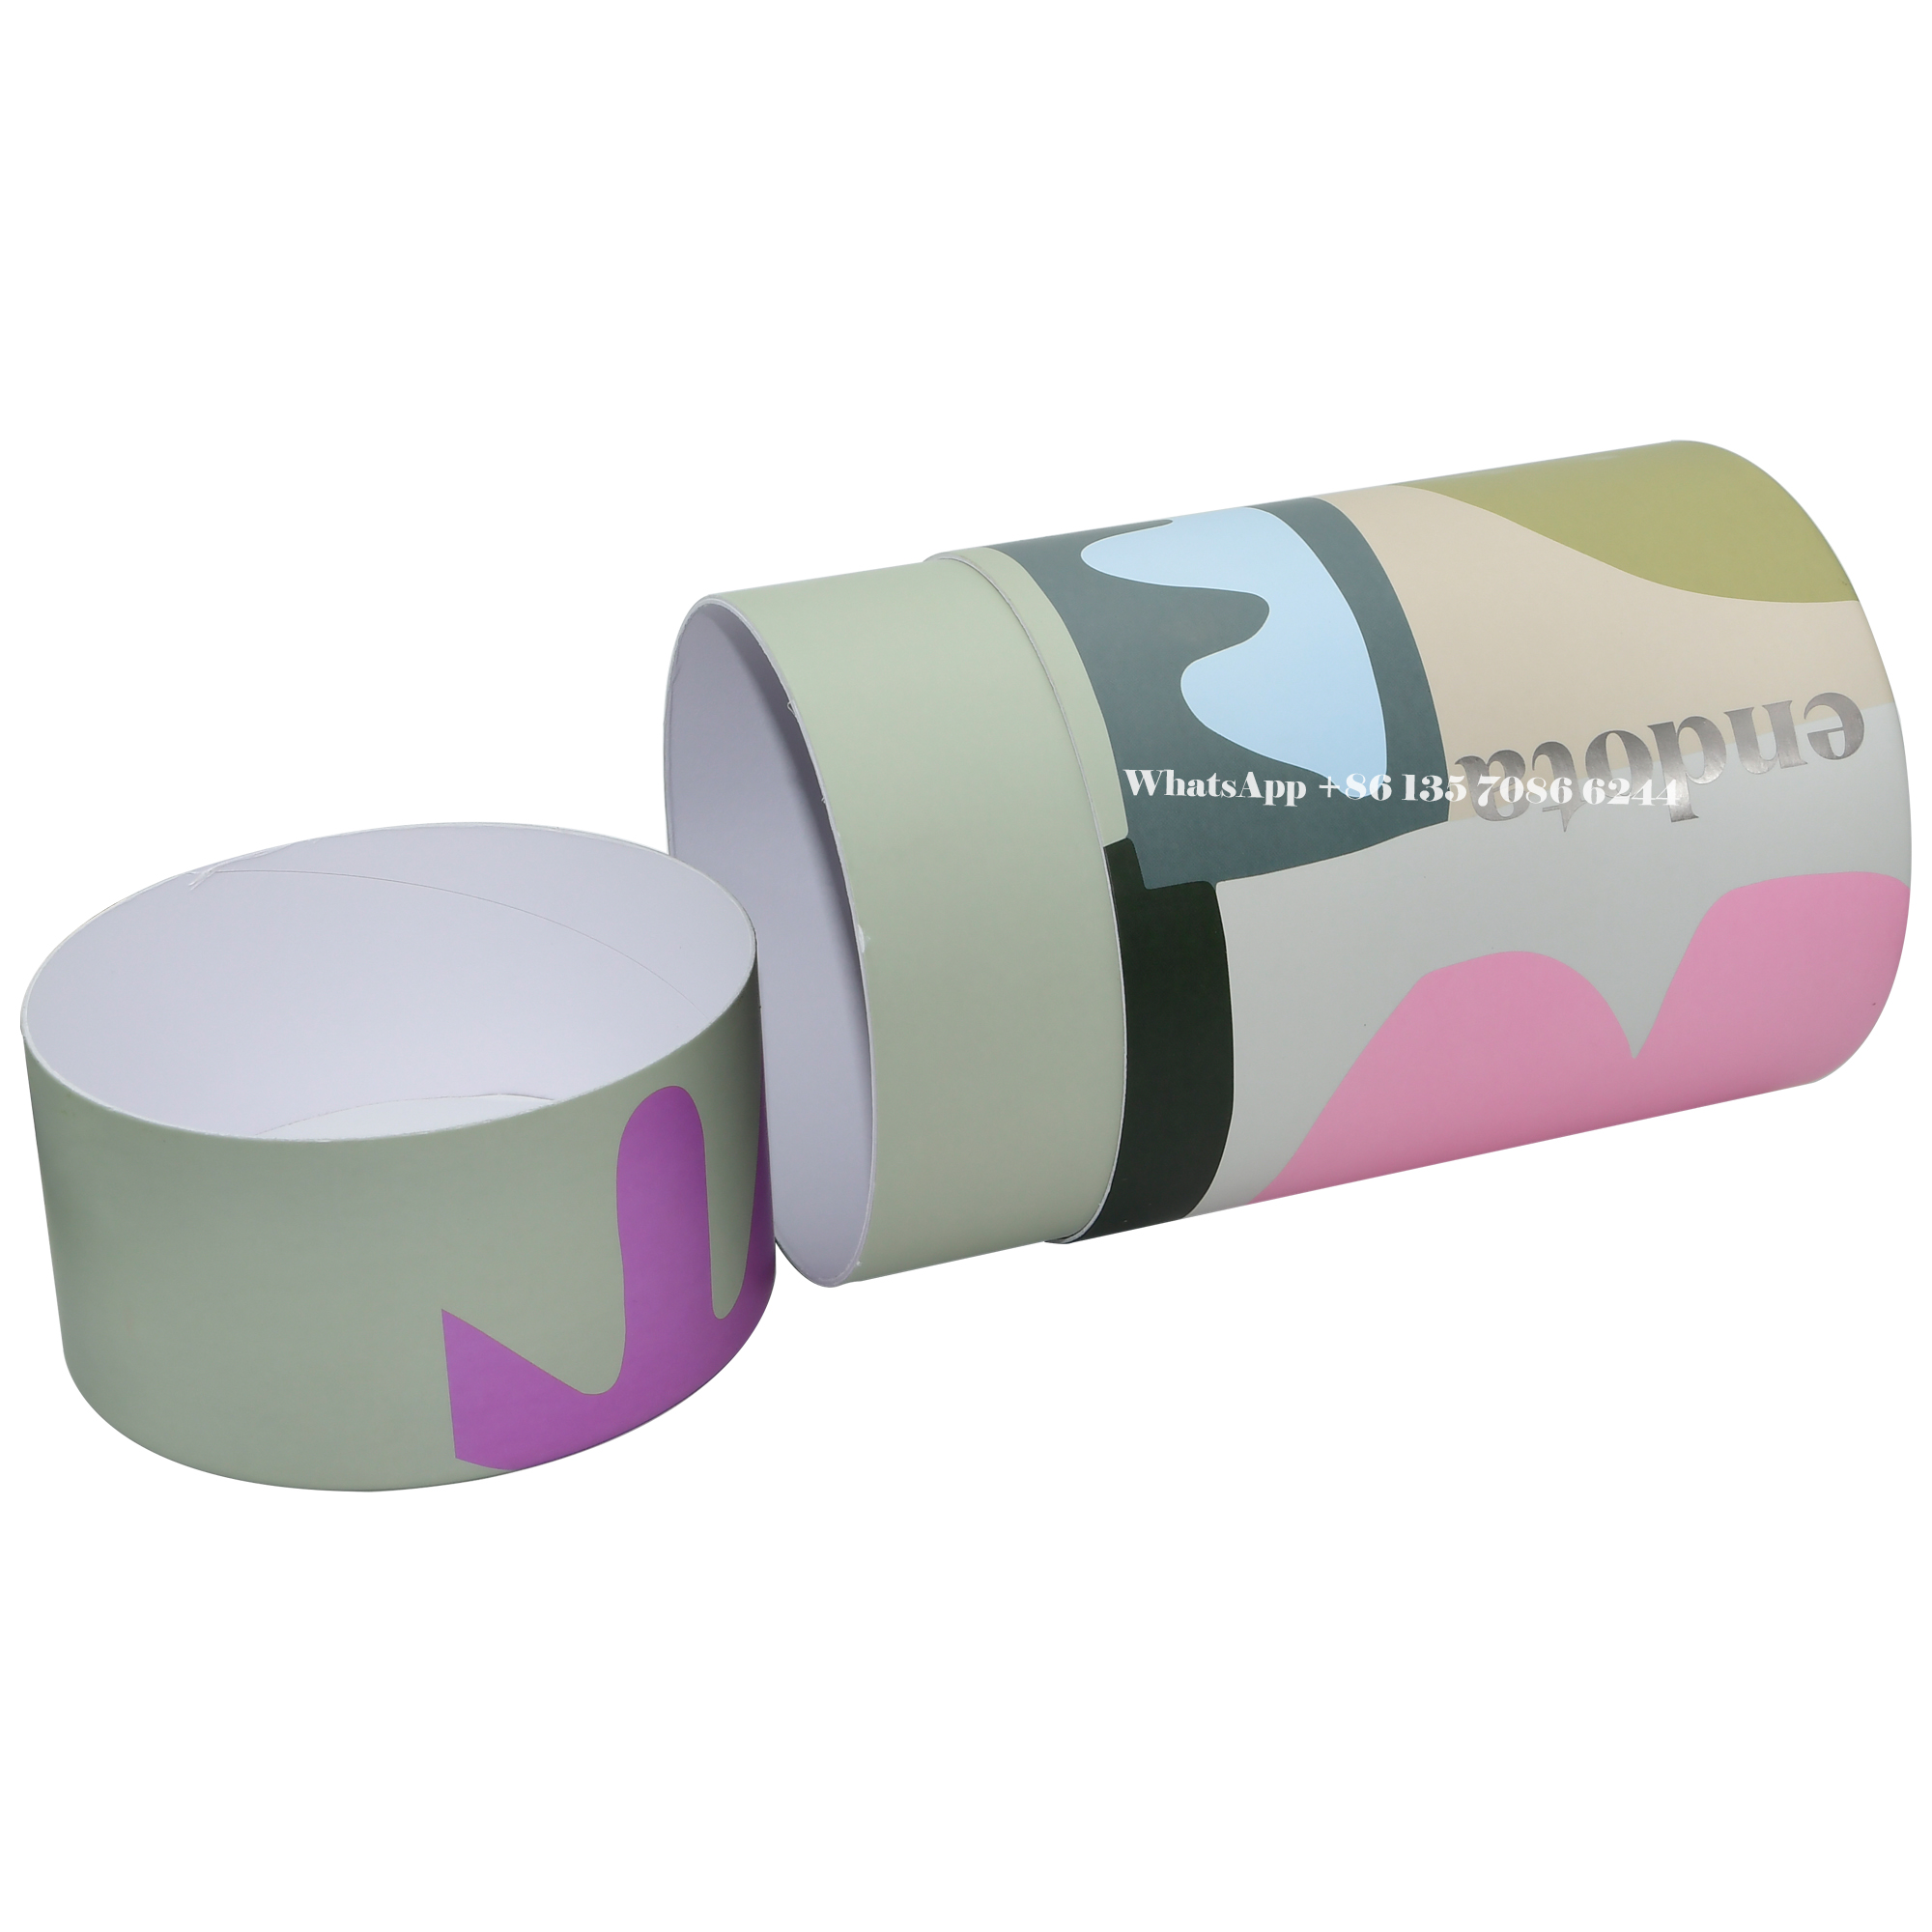 Schützende Papierzylinderboxen für Skin Saver Kit-Verpackungen  